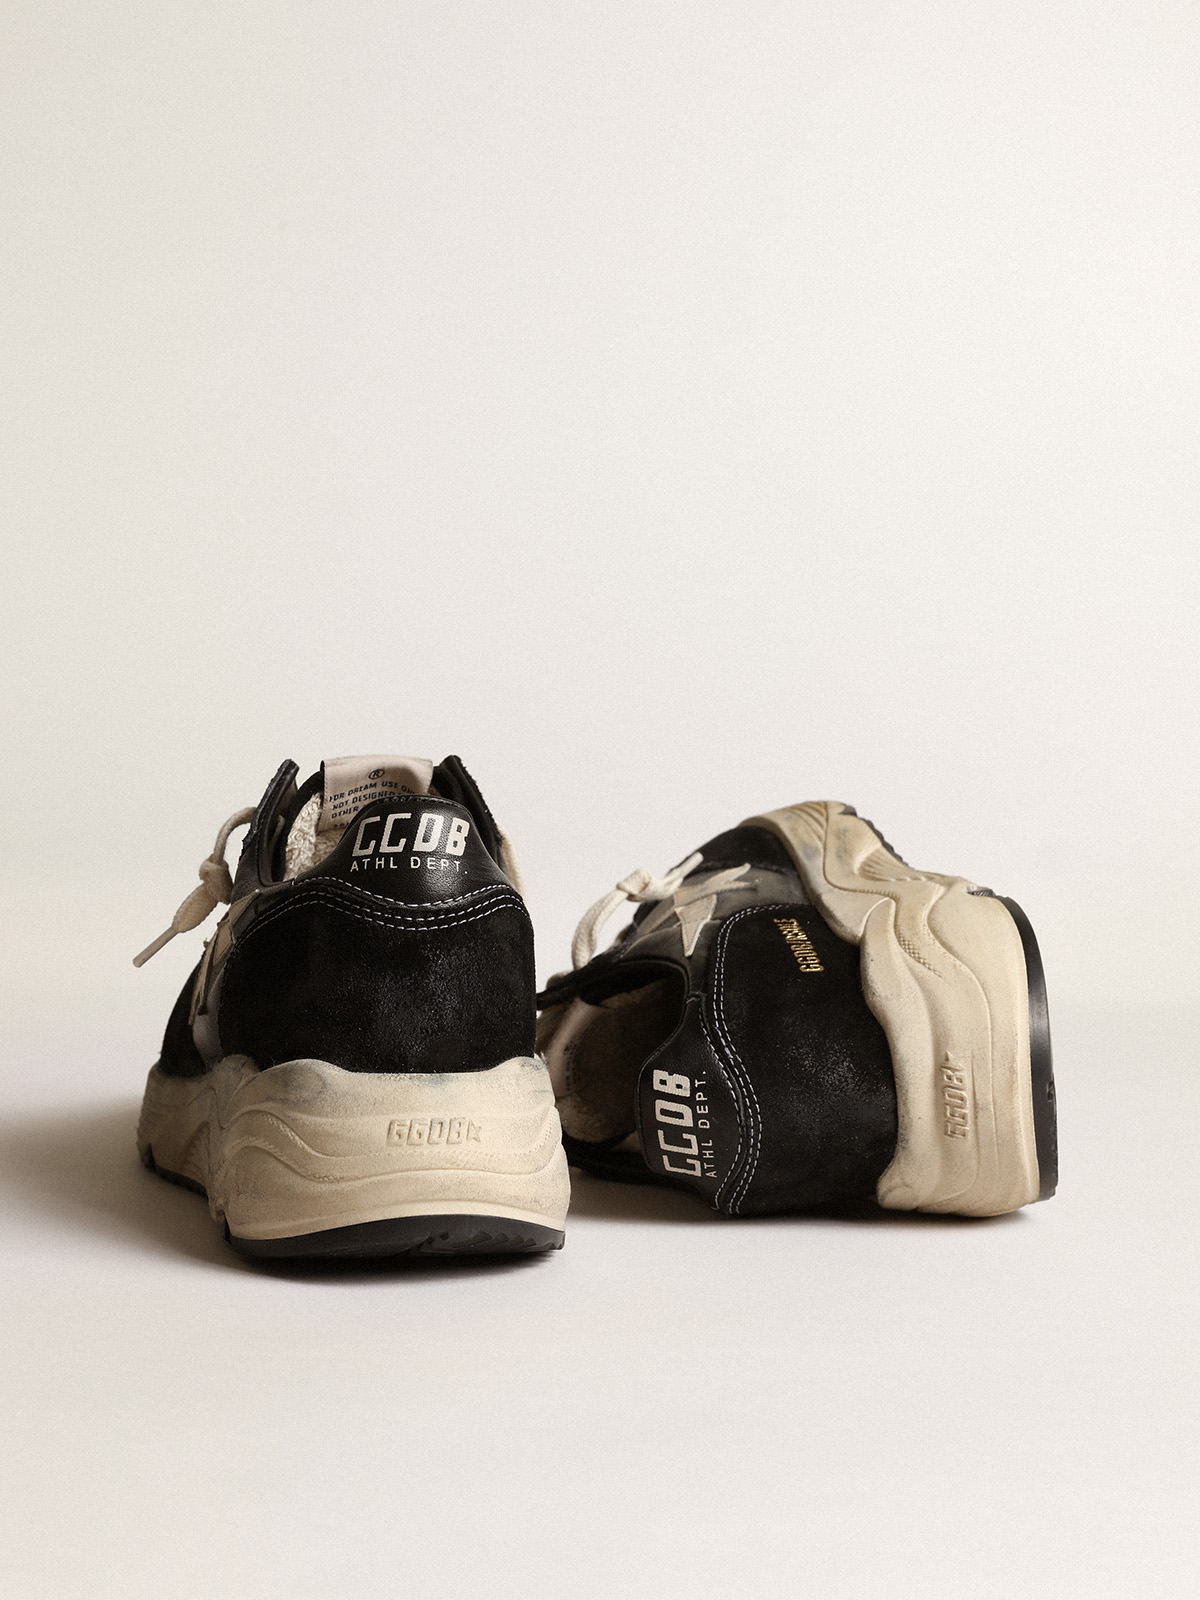 GOLDEN GOOSE Sneaker Running in Black/White 37